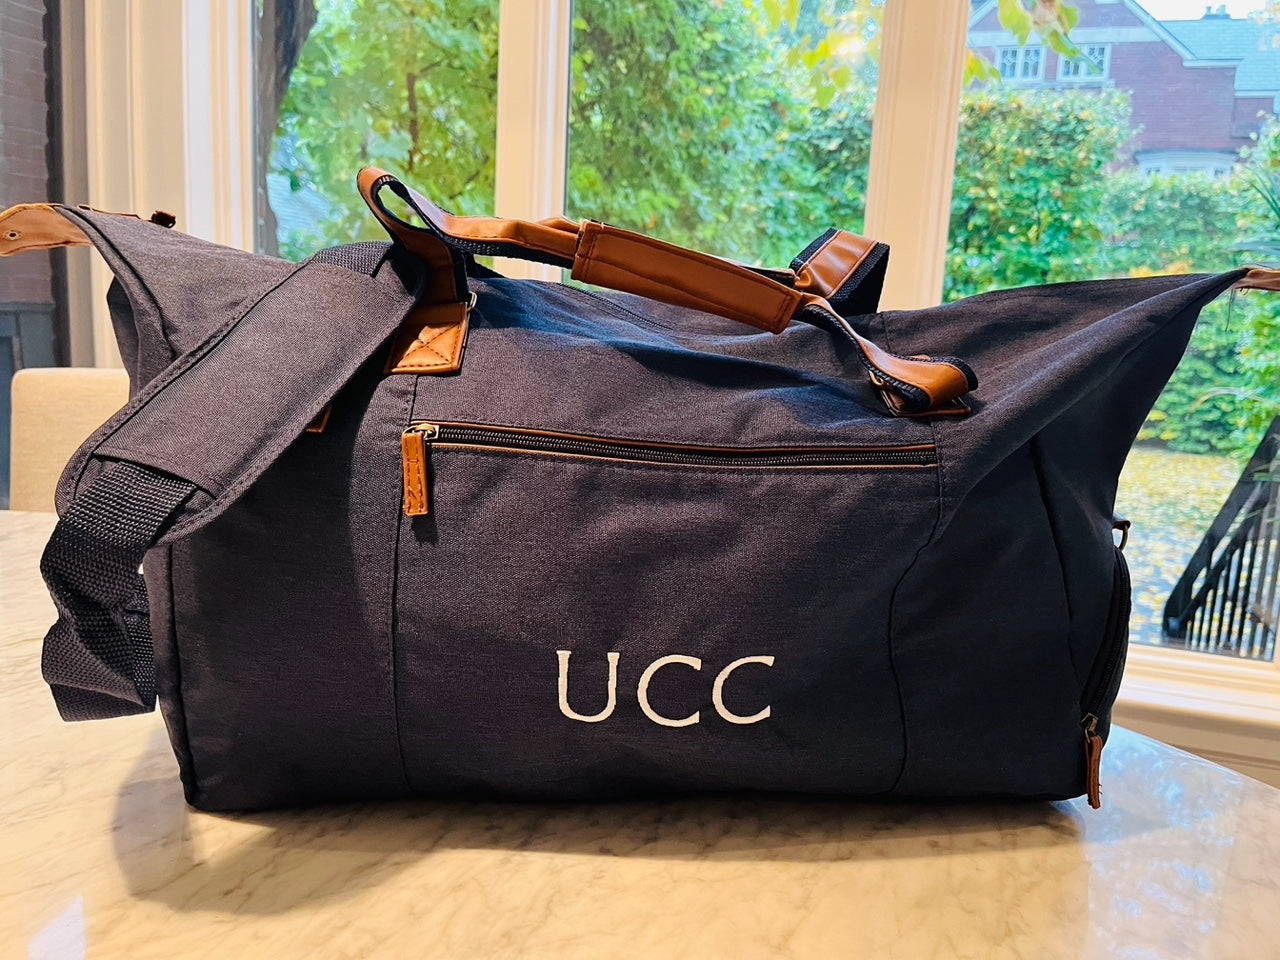 UCC Weekend Travel Bag